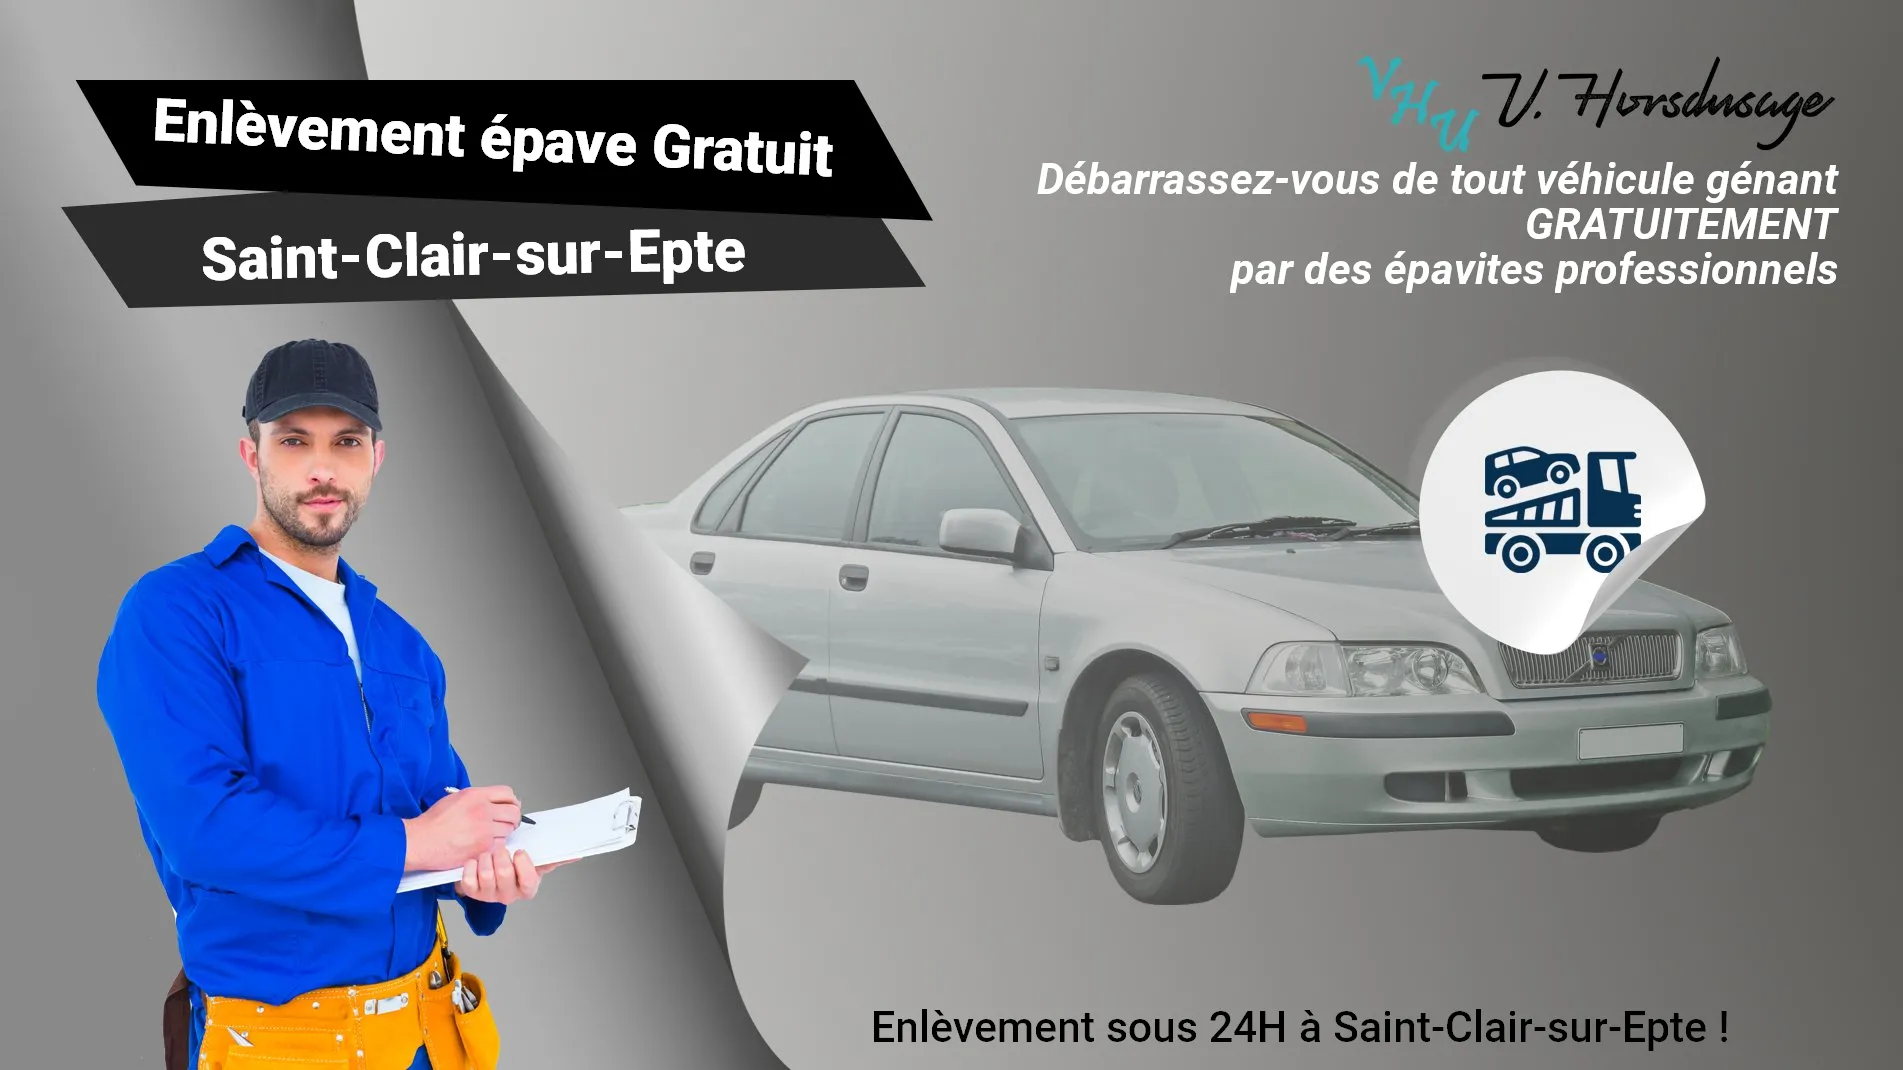 Pour un enlèvement gratuit à Saint-Clair-sur-Epte, contactez nos épavistes agréé VHU